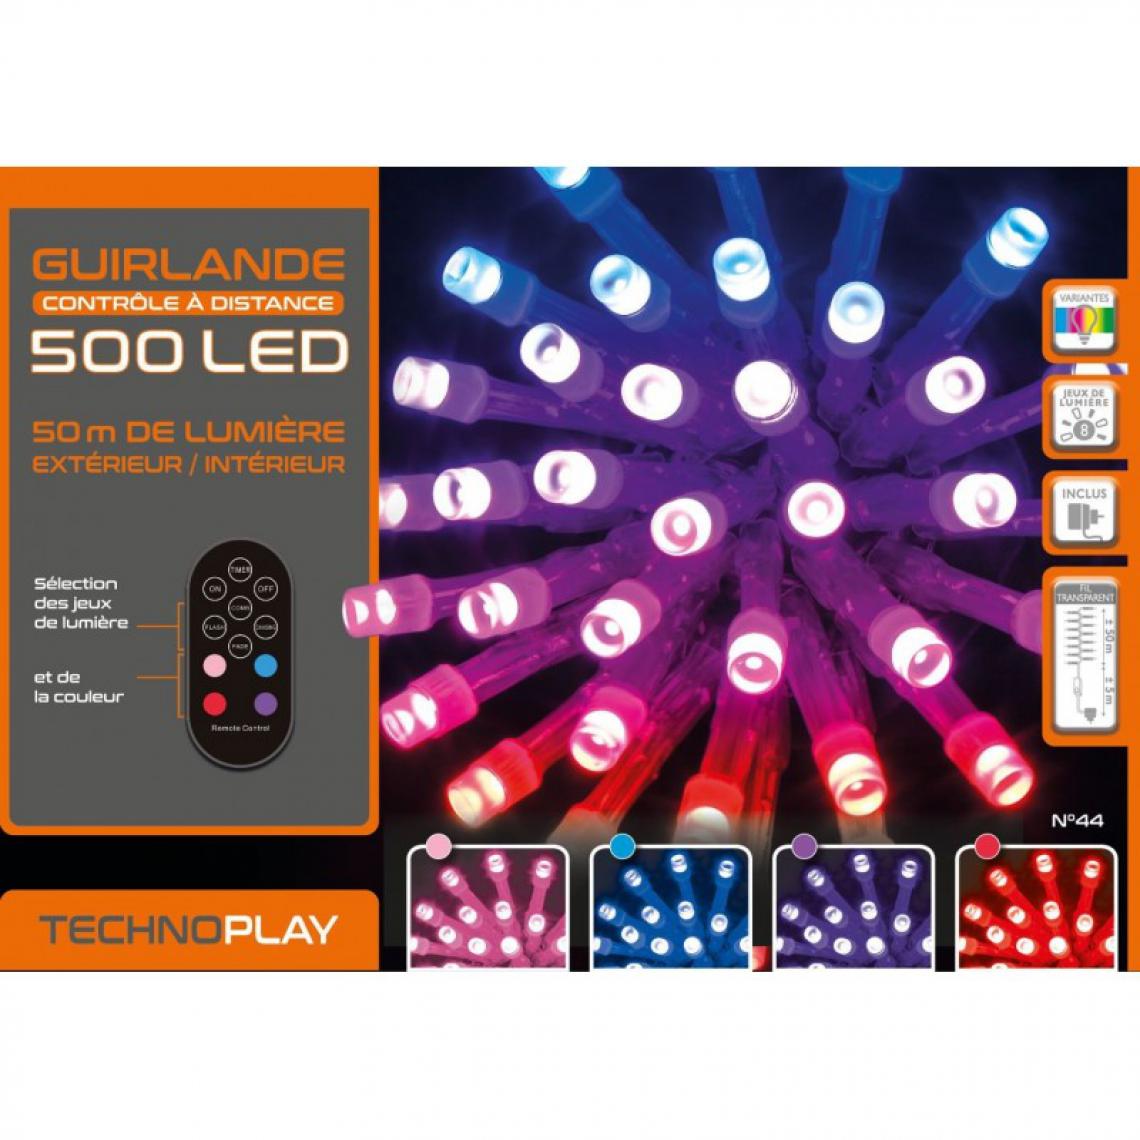 JJA - Guirlande contrôle à distance 500 LED 50 mètres variation de couleurs - Décorations de Noël